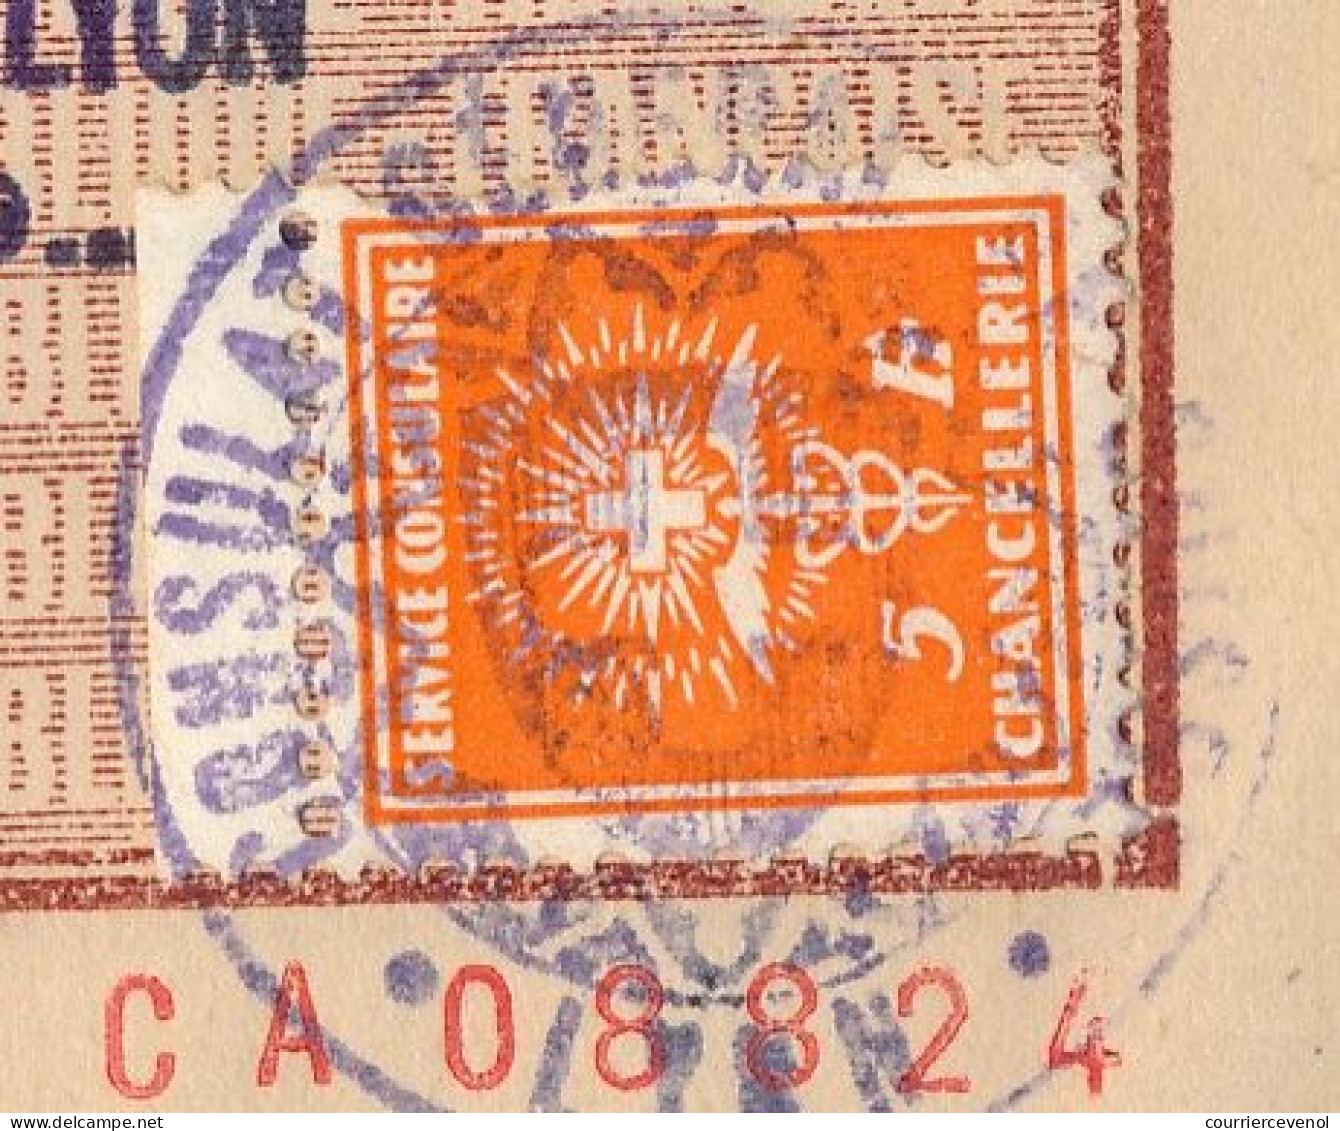 FRANCE - Passeport 60 francs 1946/1949 - Vichy, renouvelé id. timbre fiscal 500 francs + Visa Suisse / fiscal